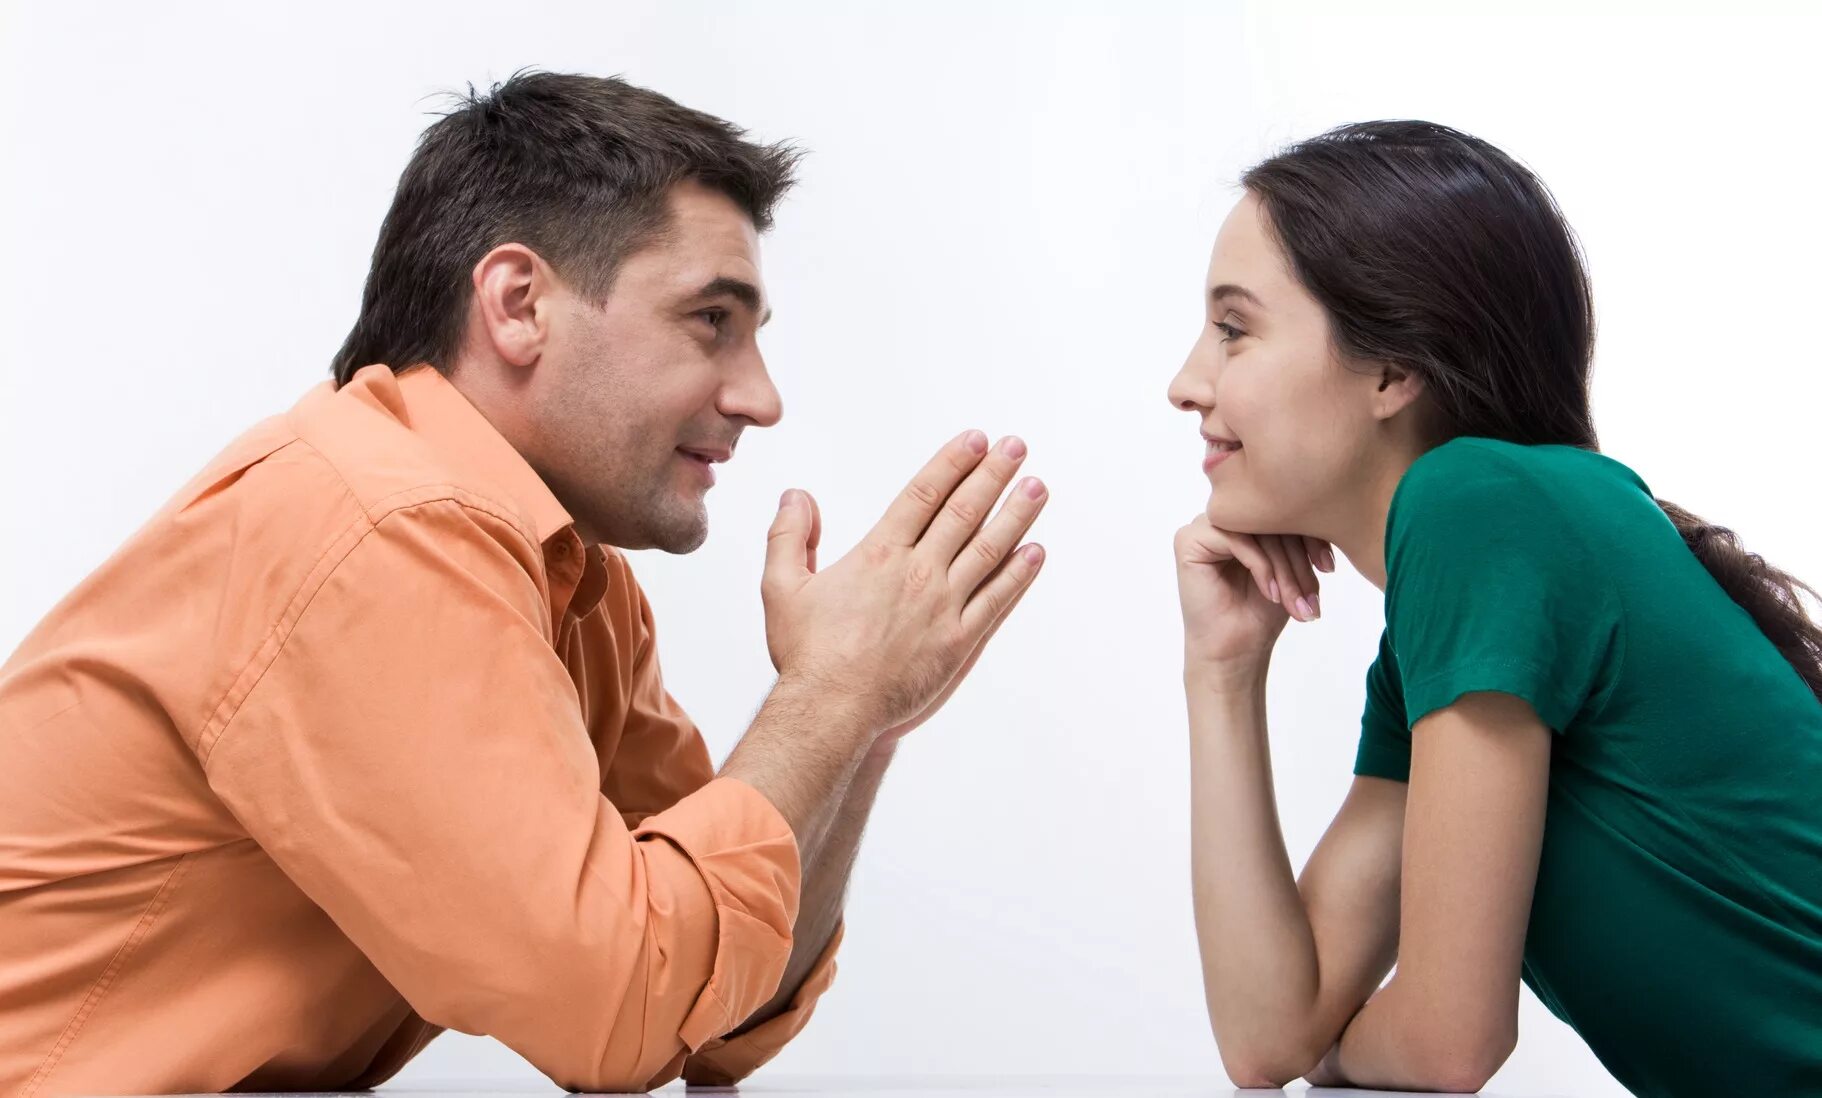 Сознание доверие. Разговор между мужчиной и женщиной. Общение людей. Взаимопонимание в общении. Беседа мужчины и женщины.